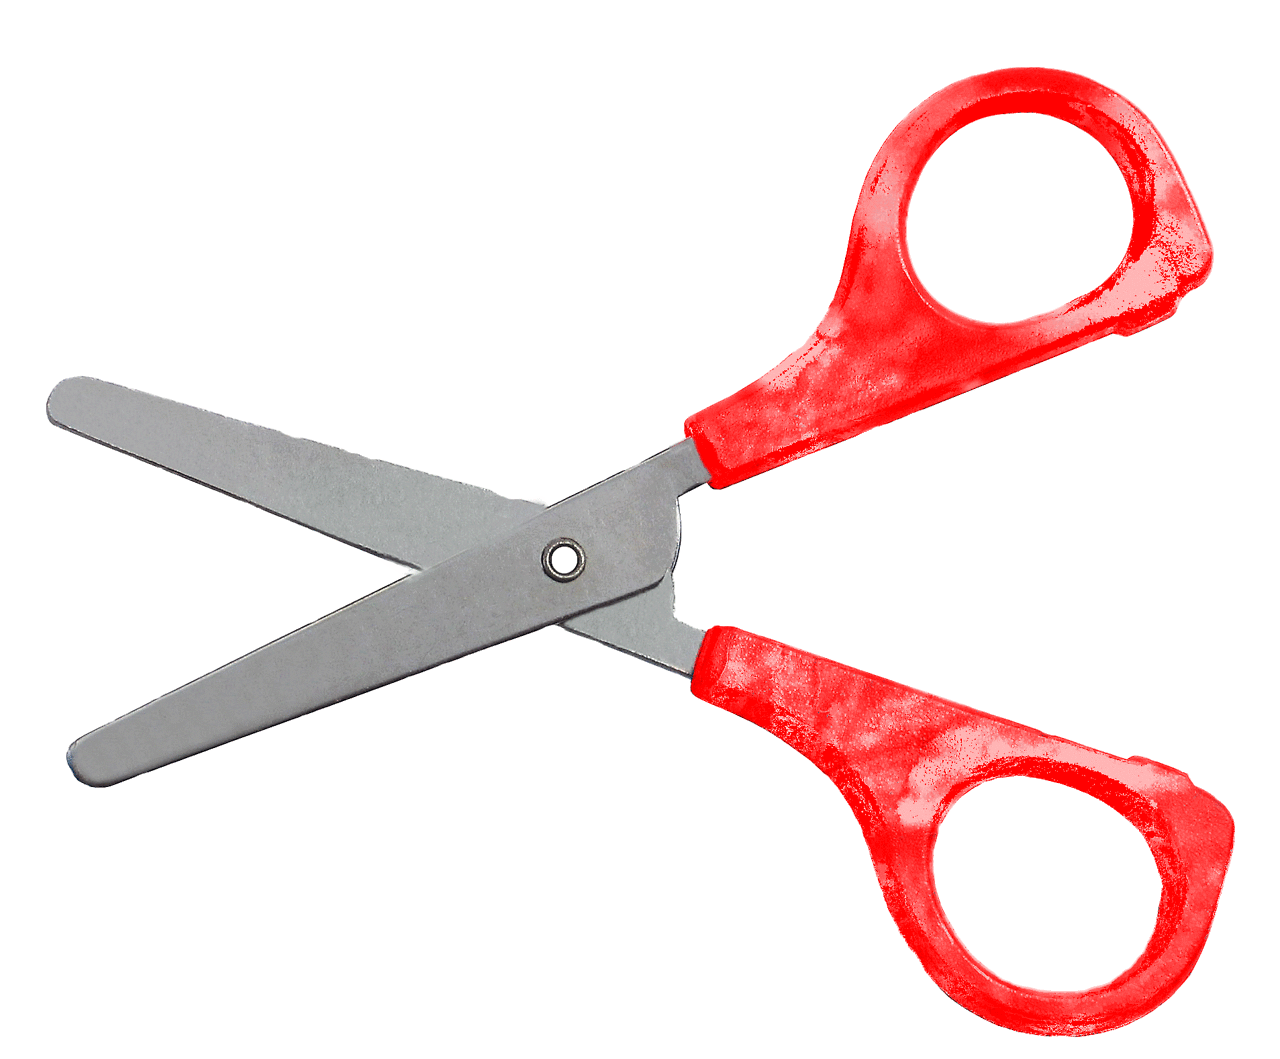 snip scissors